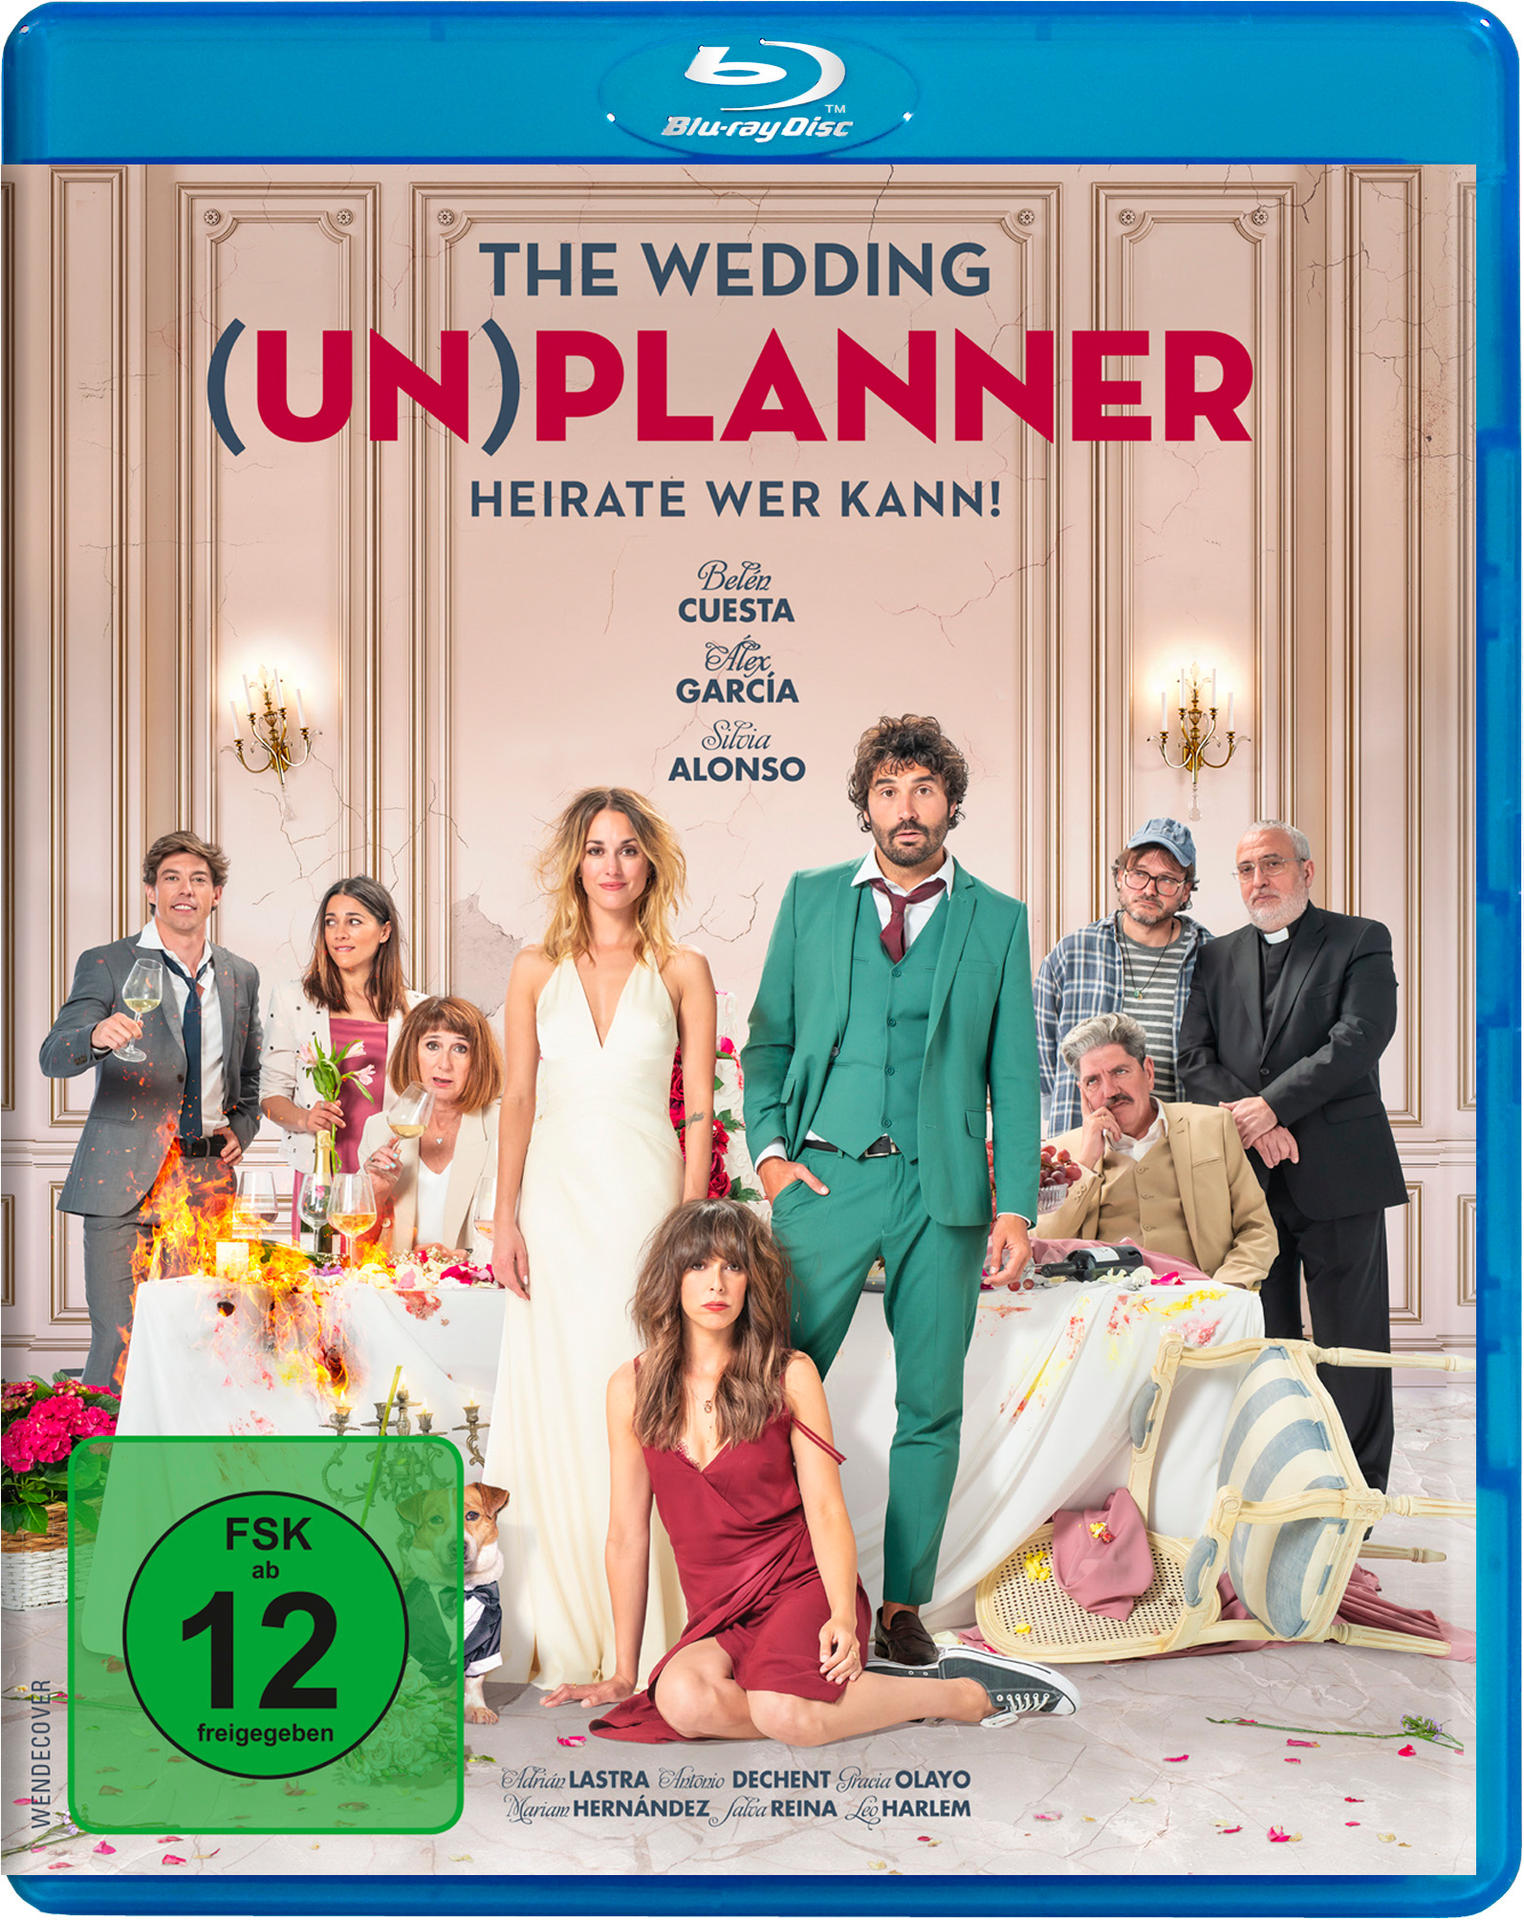 WER THE KANN! WEDDING Blu-ray (UN)PLANNER-HEIRATE